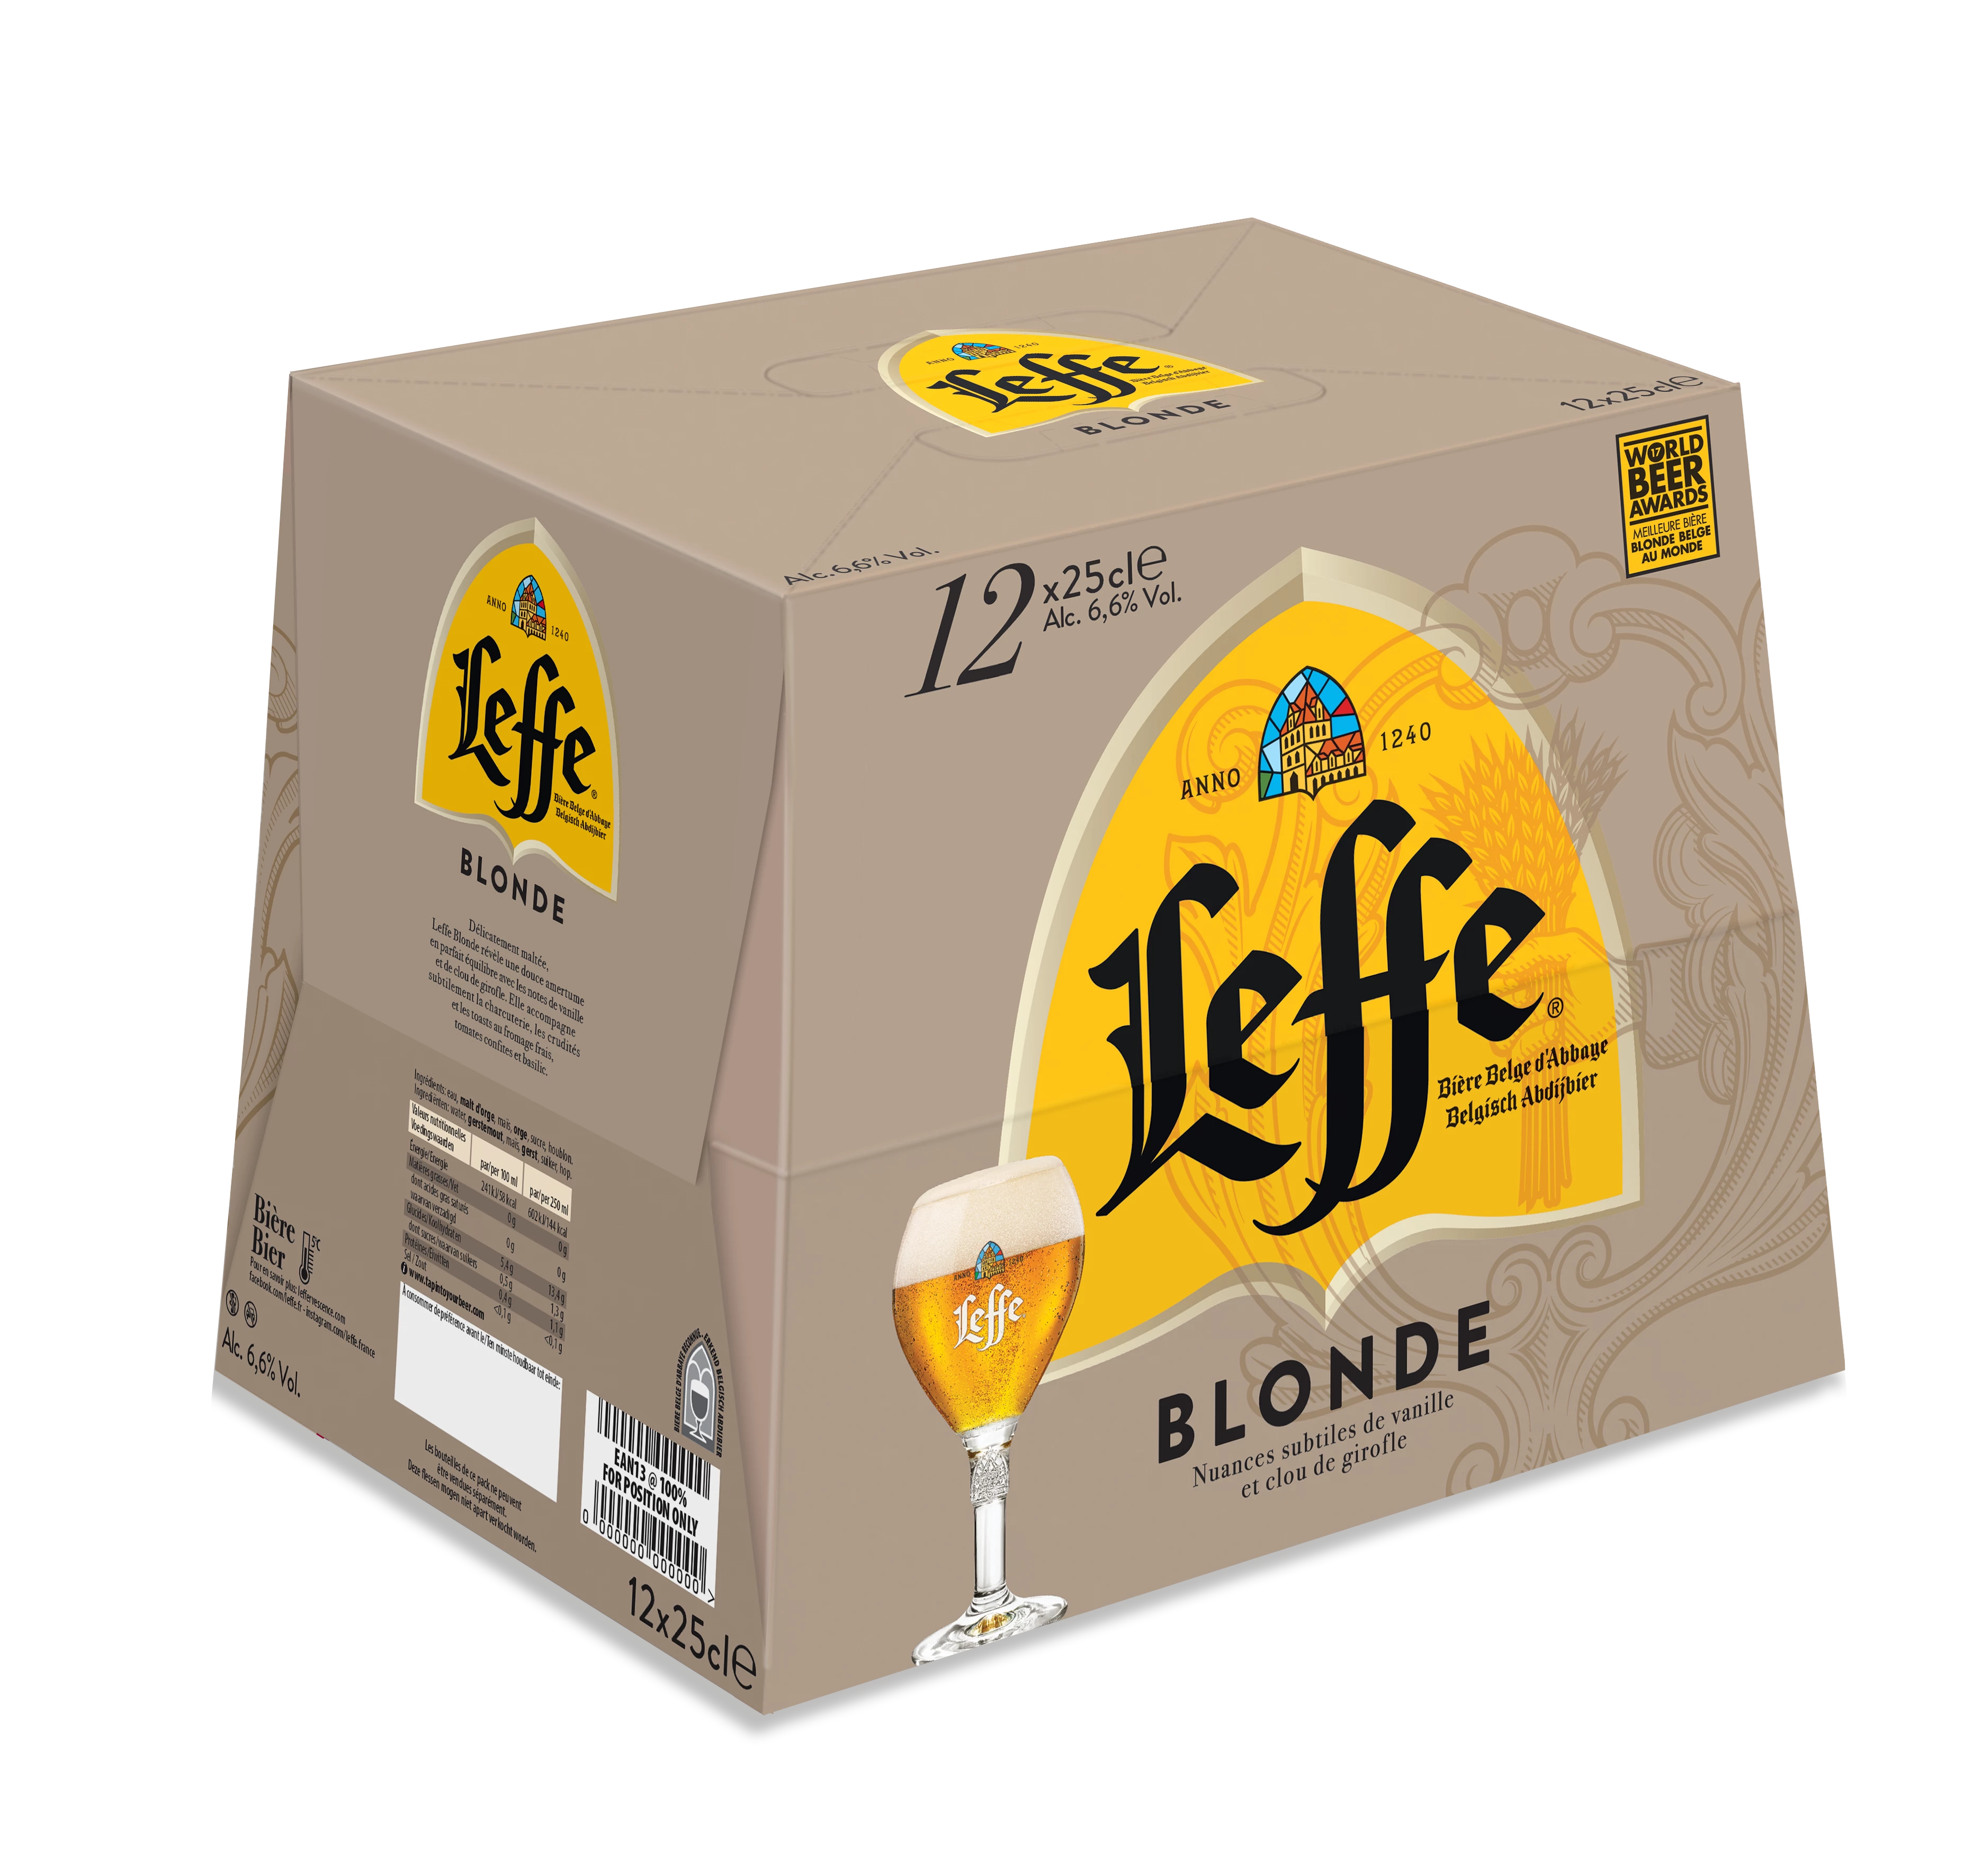 Bia vàng, 12x25cl - LEFFE